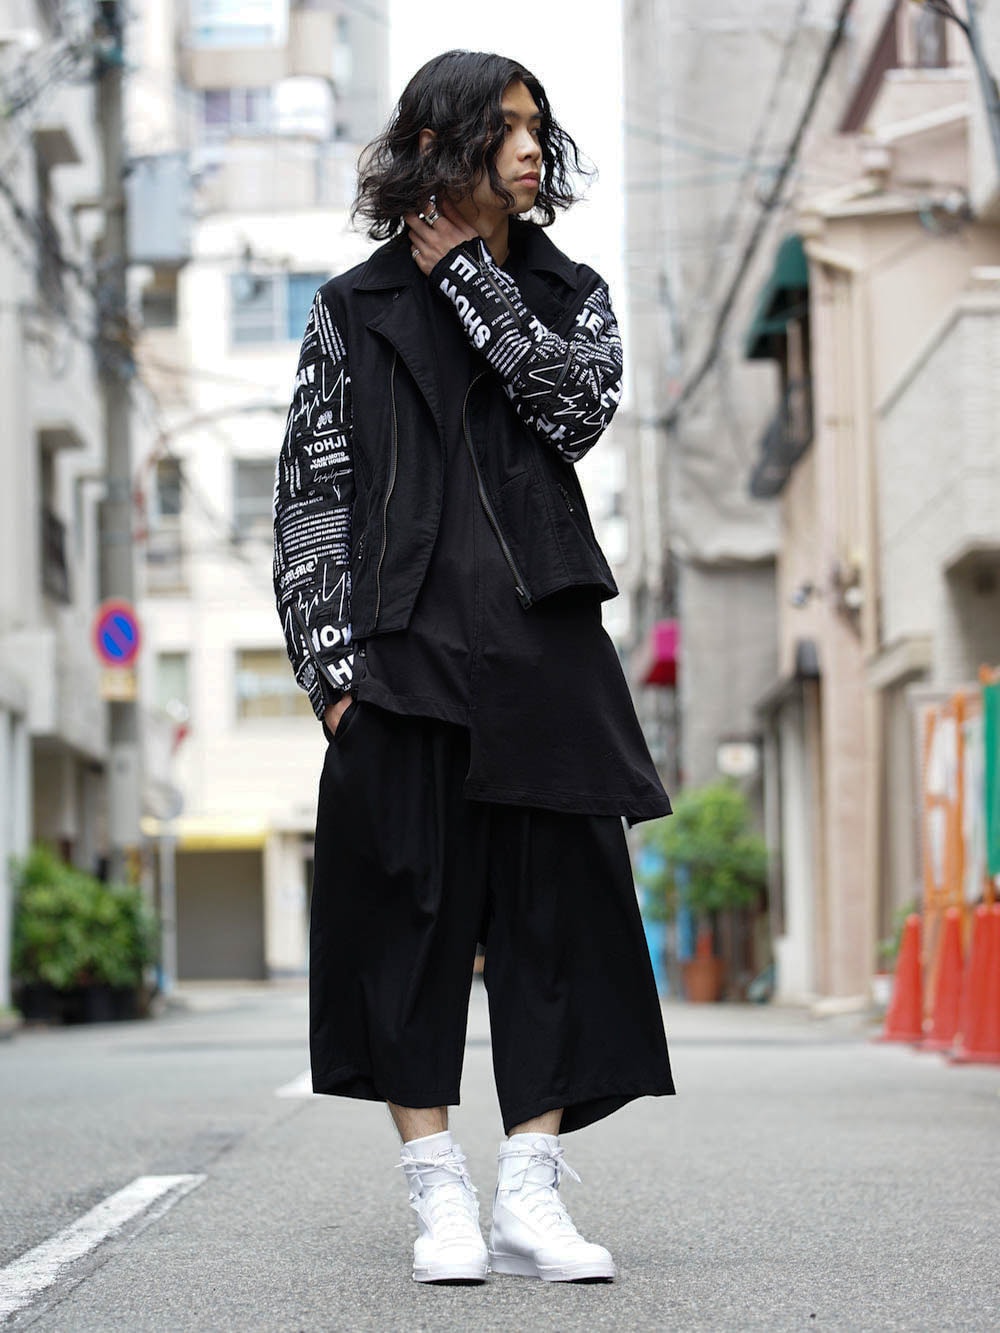 Yohji Yamamoto x Readymade Riders Jacket Style - FASCINATE BLOG